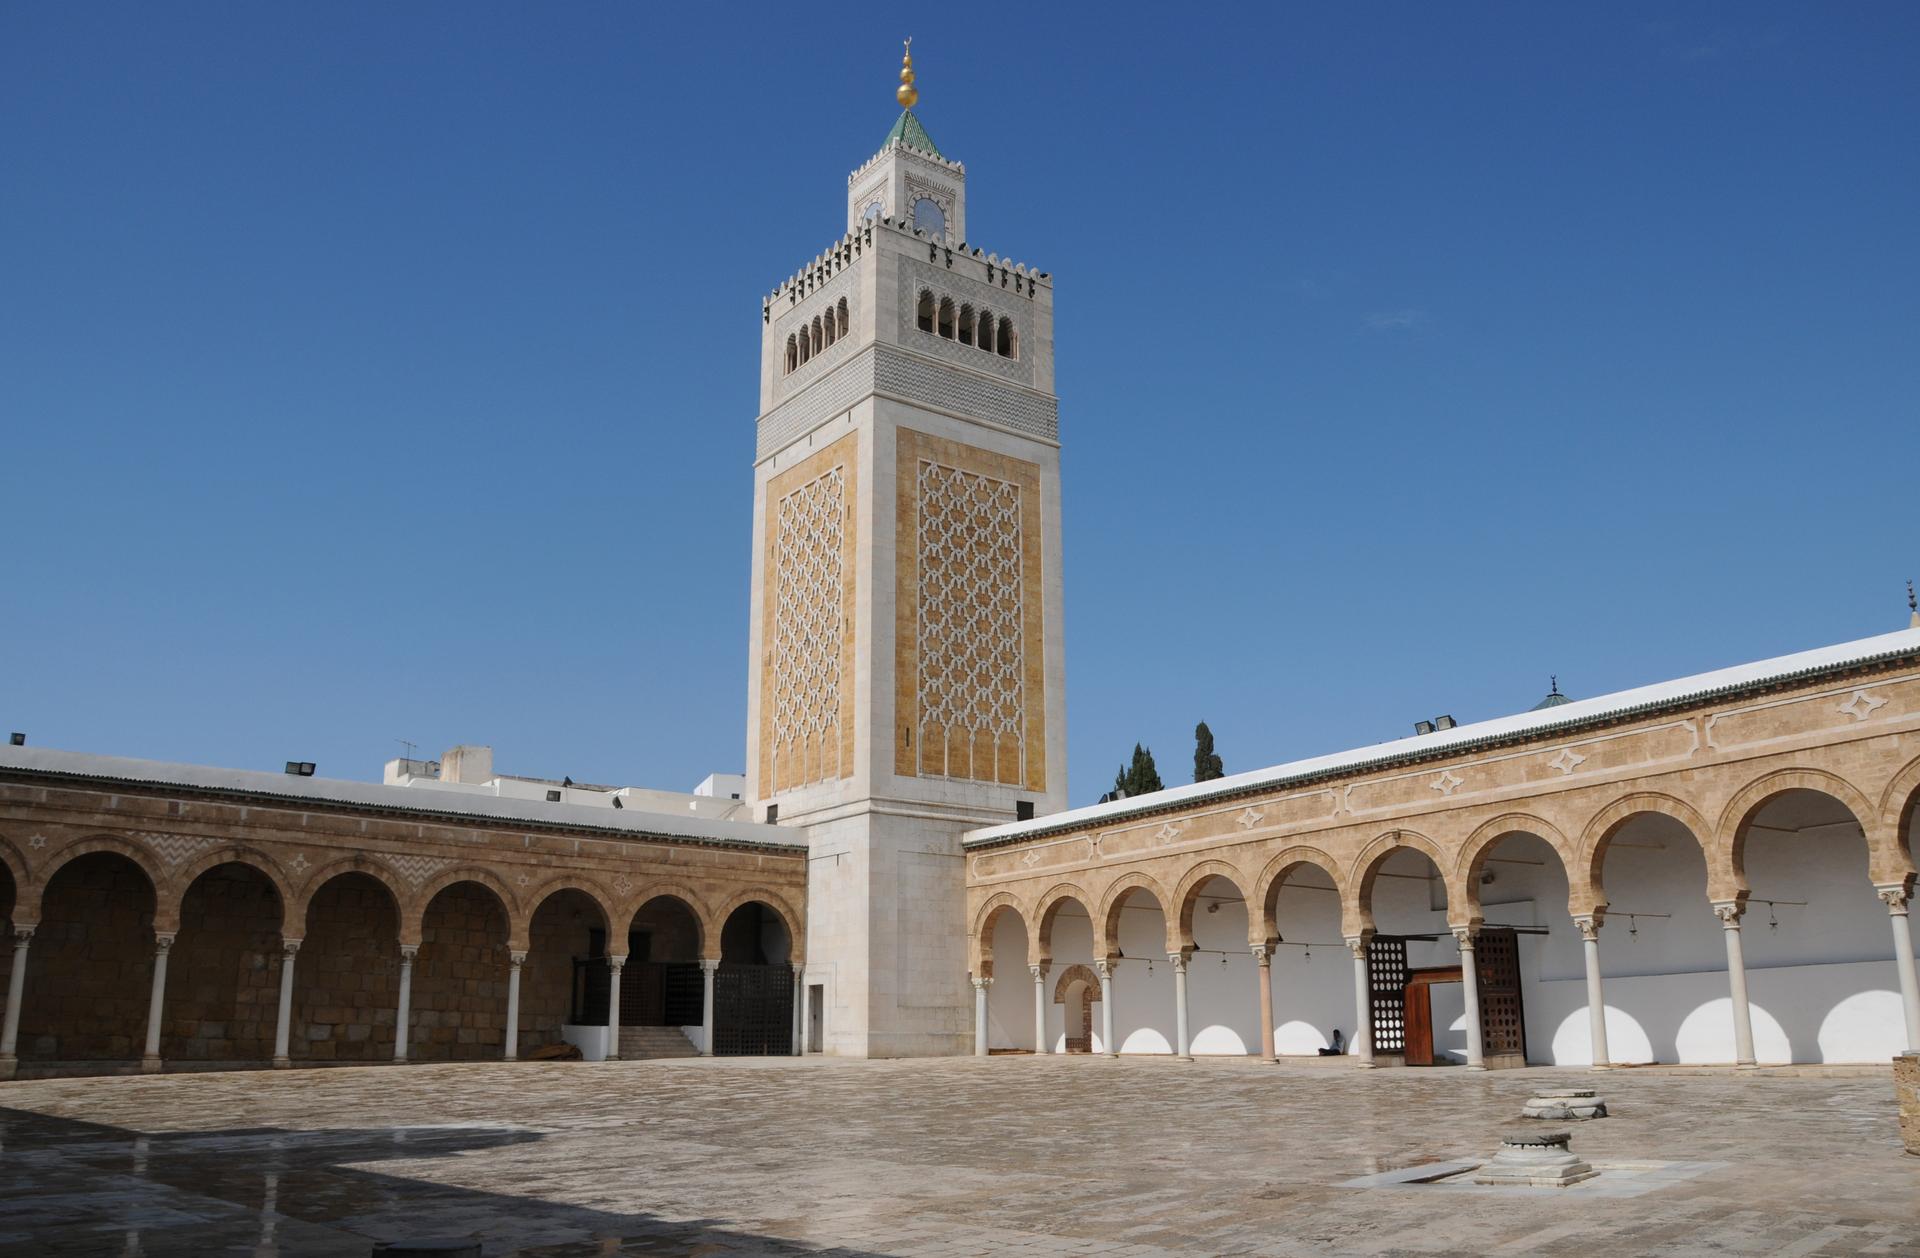 Minaret of the Al-Zaytuna Mosque in Tunis.